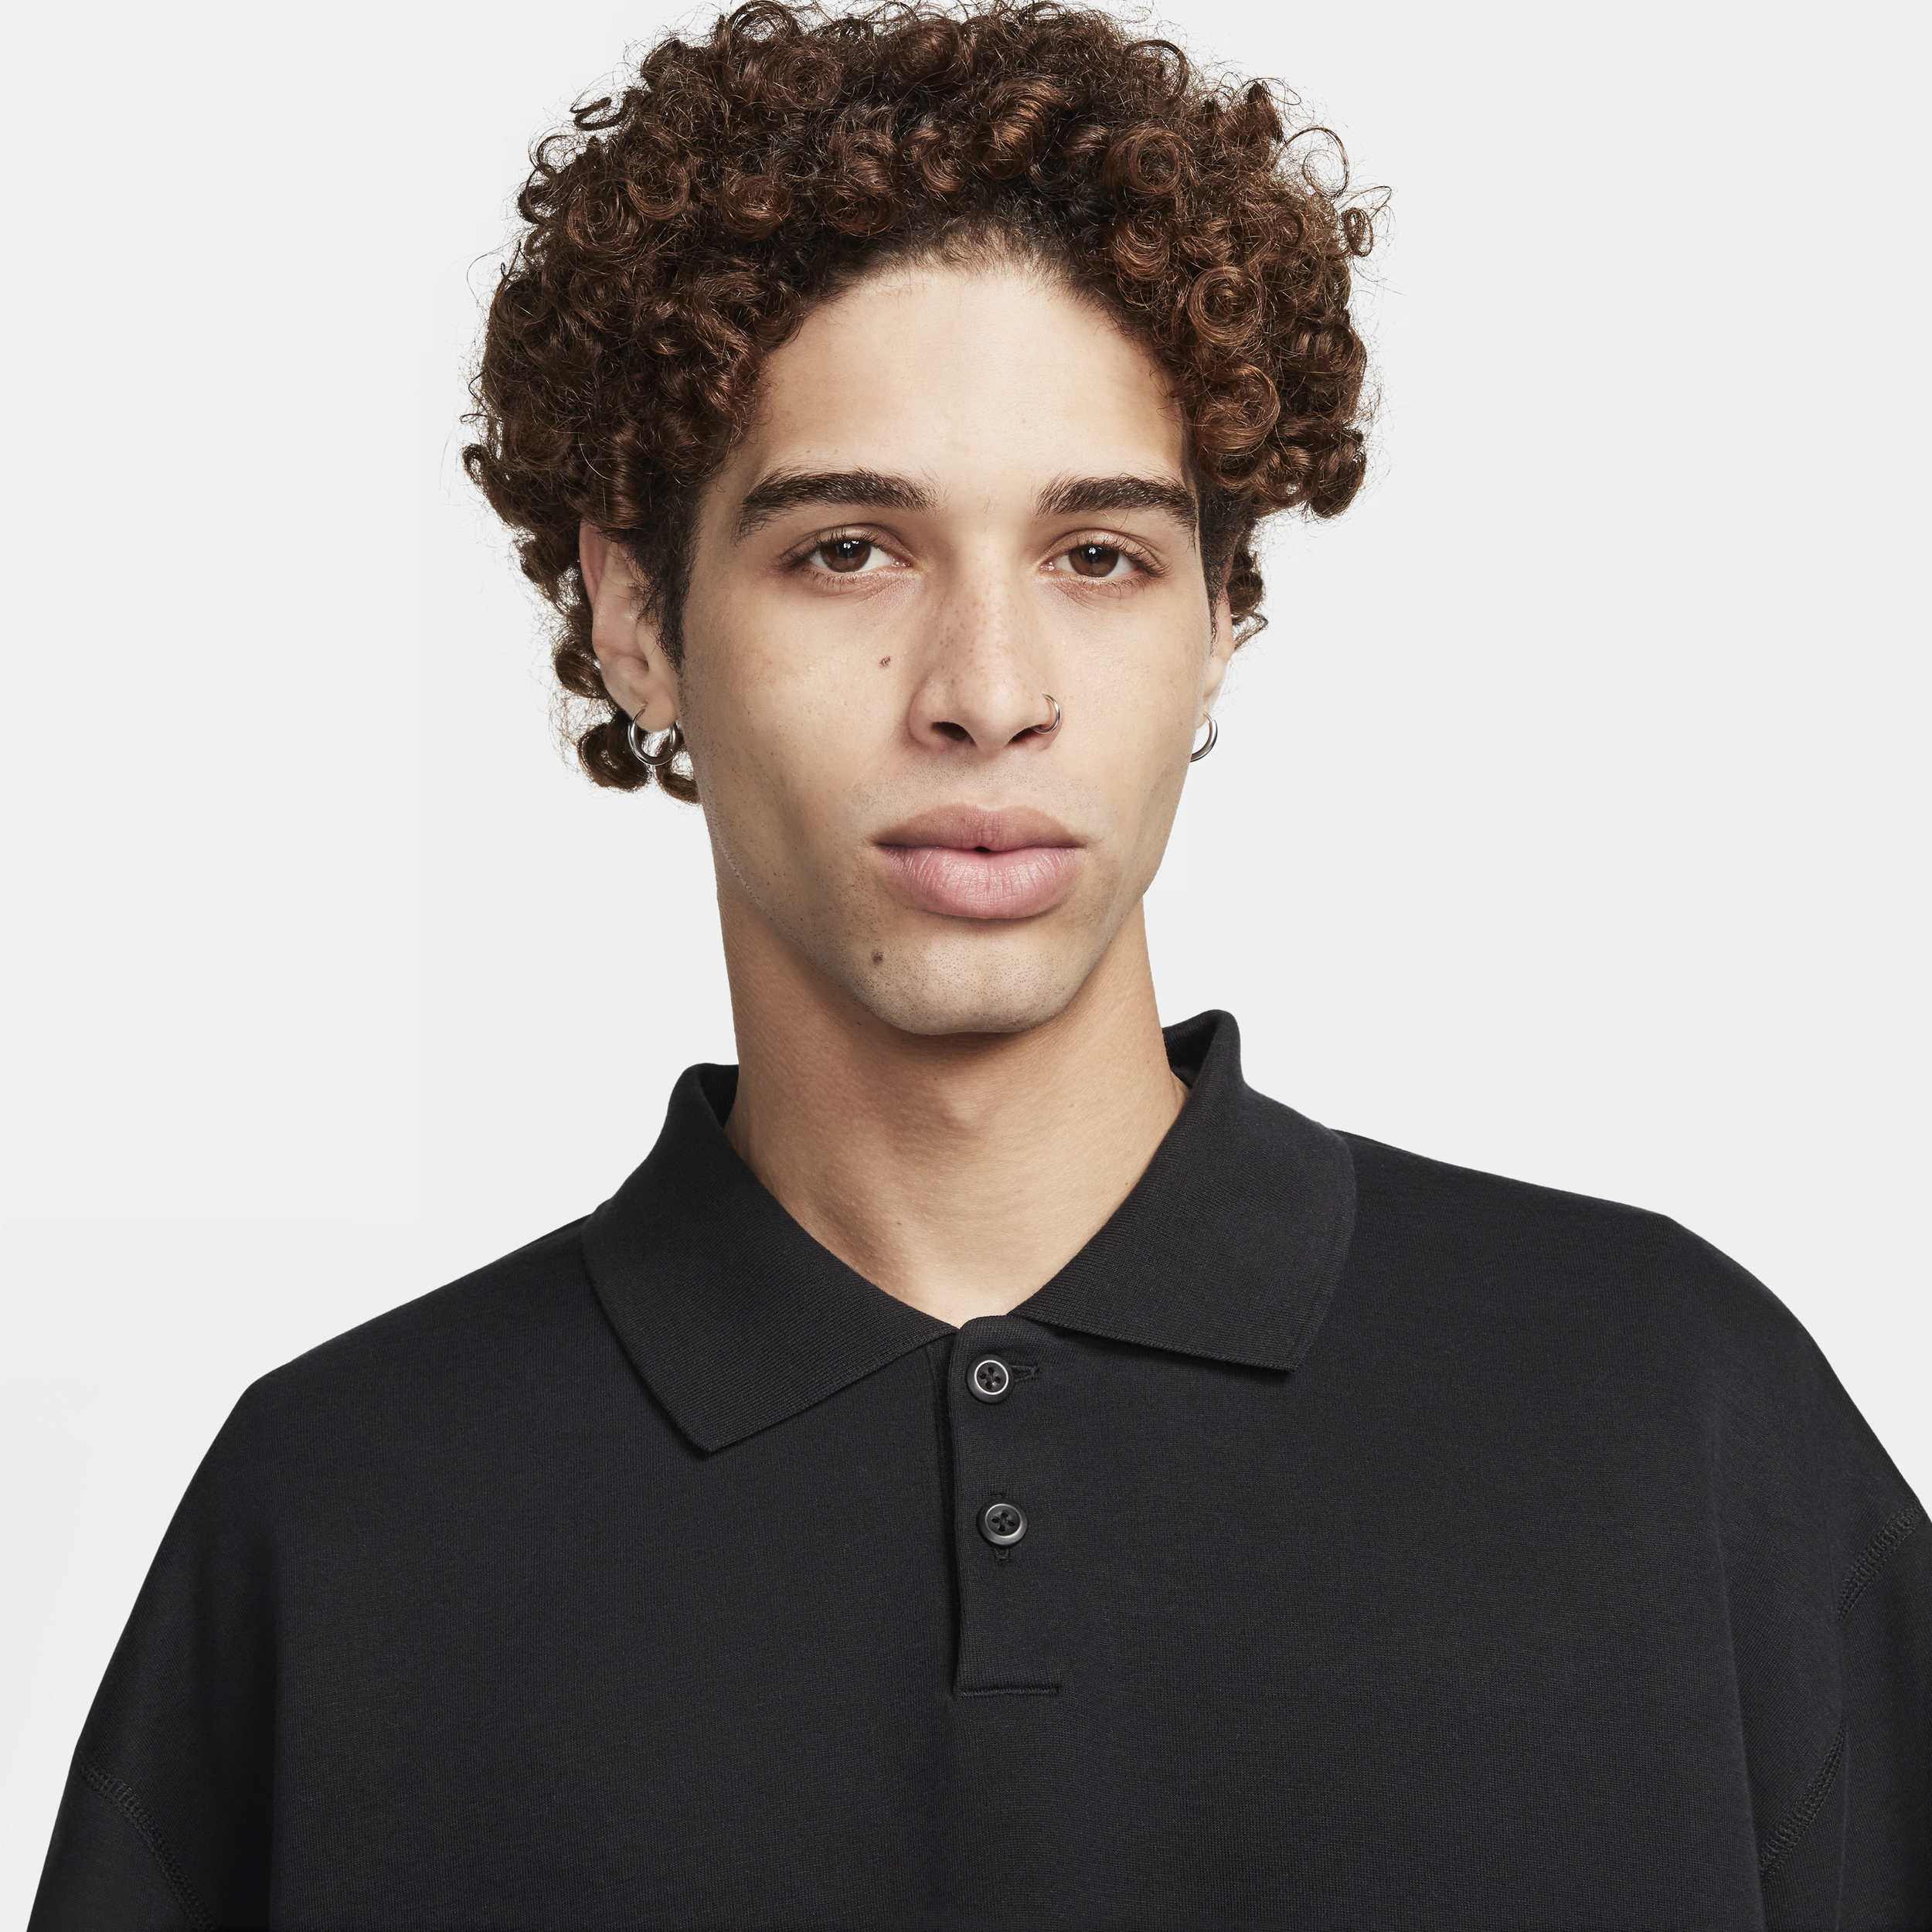 Nike Tech Fleece Reimagined polo voor heren Zwart